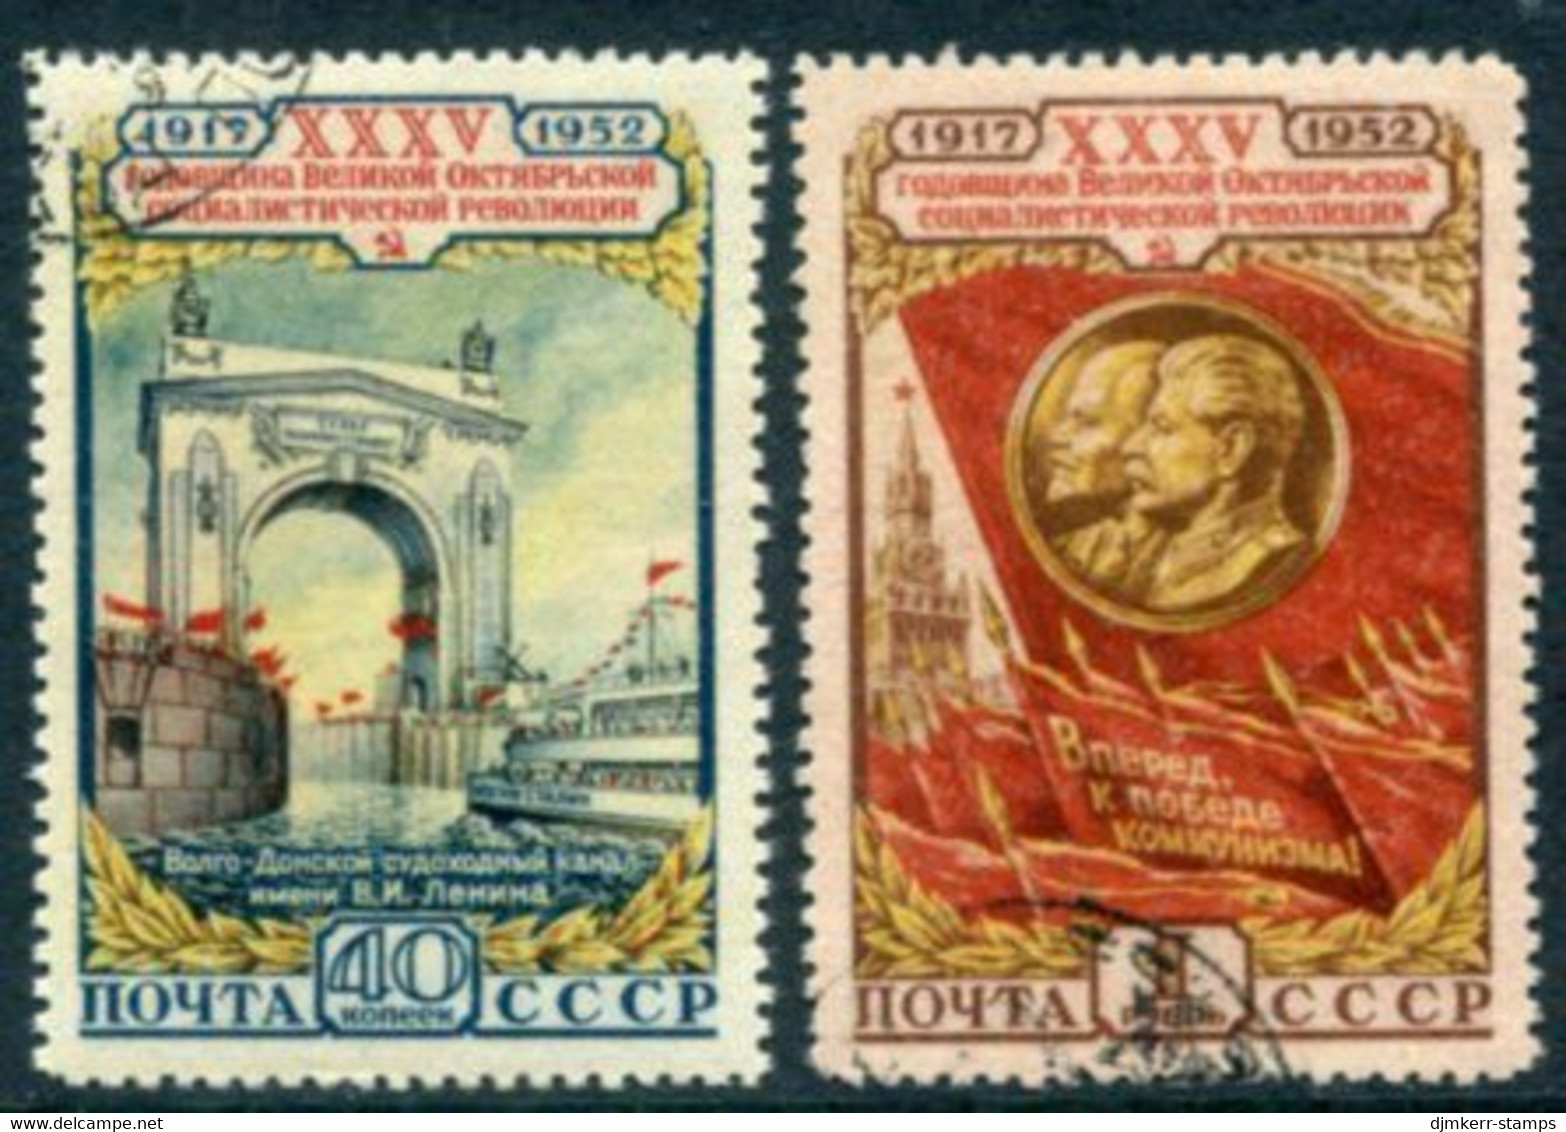 SOVIET UNION 1952 October Revolution  Anniversary Used.  Michel 1646-47 - Usados